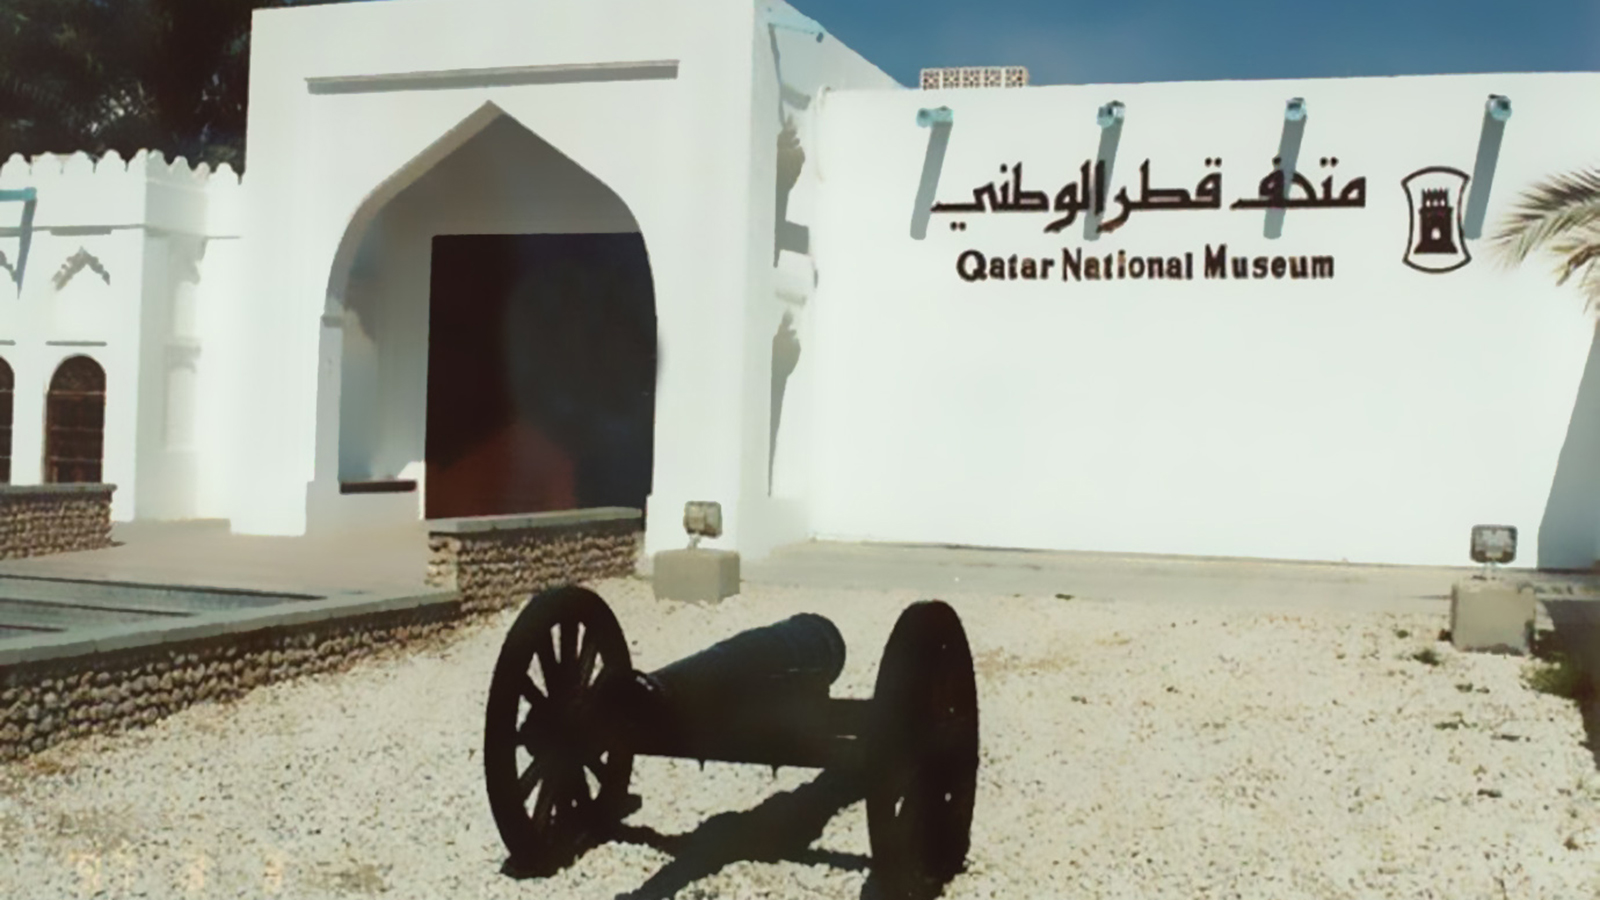 متحف قطر الوطني القديم (مواقع التواصل الاجتماعي)